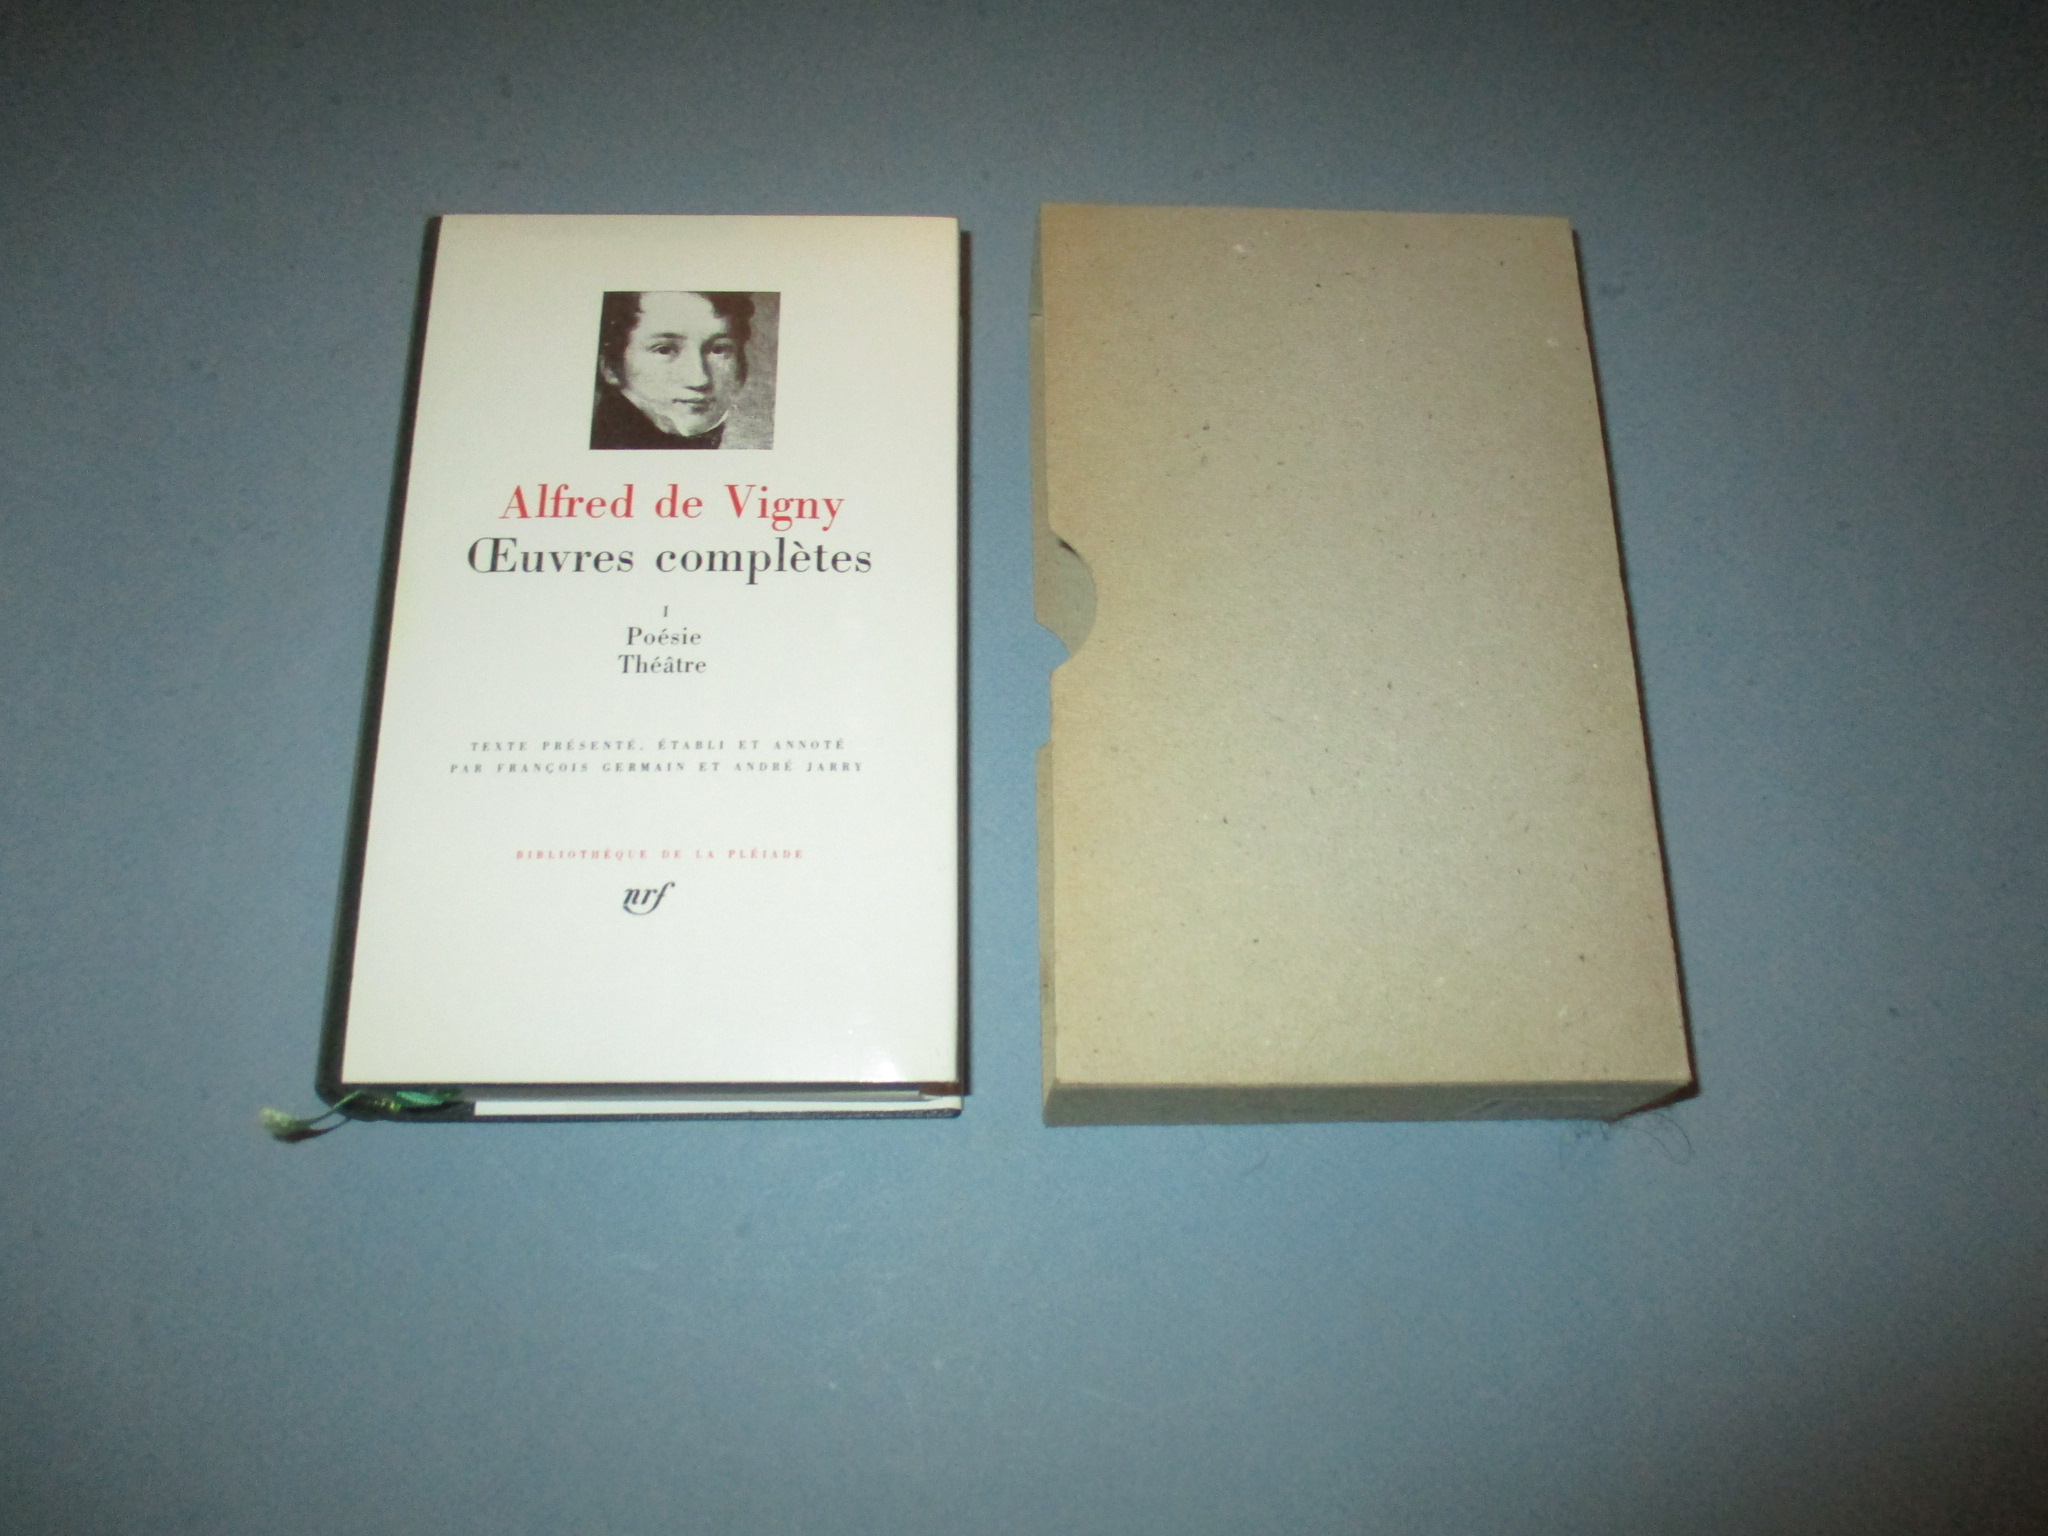 Oeuvres complètes I, Poésie & Théâtre, Alfred de Vigny, tome 1, La Pléiade 1986